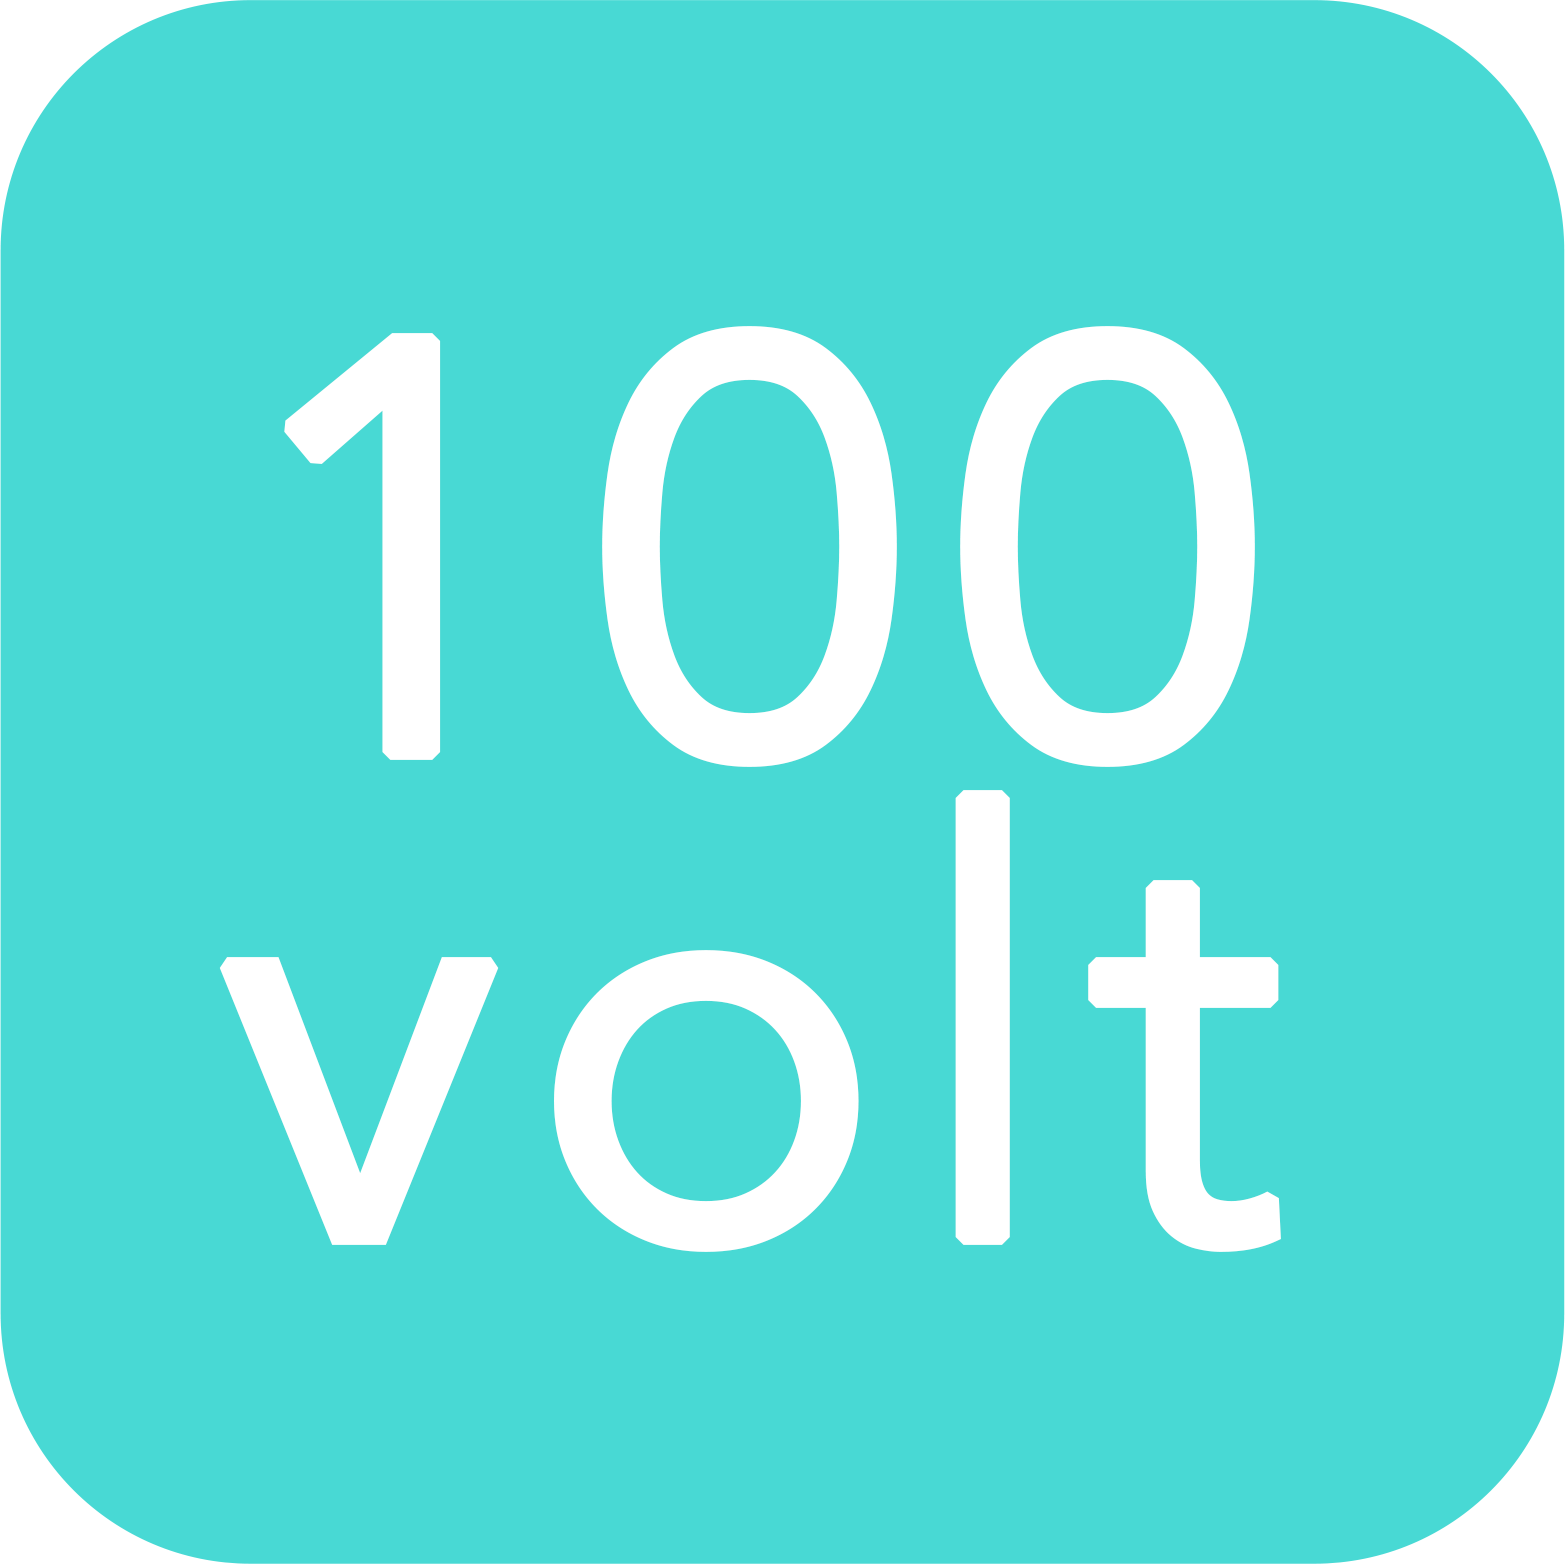 100 volt line